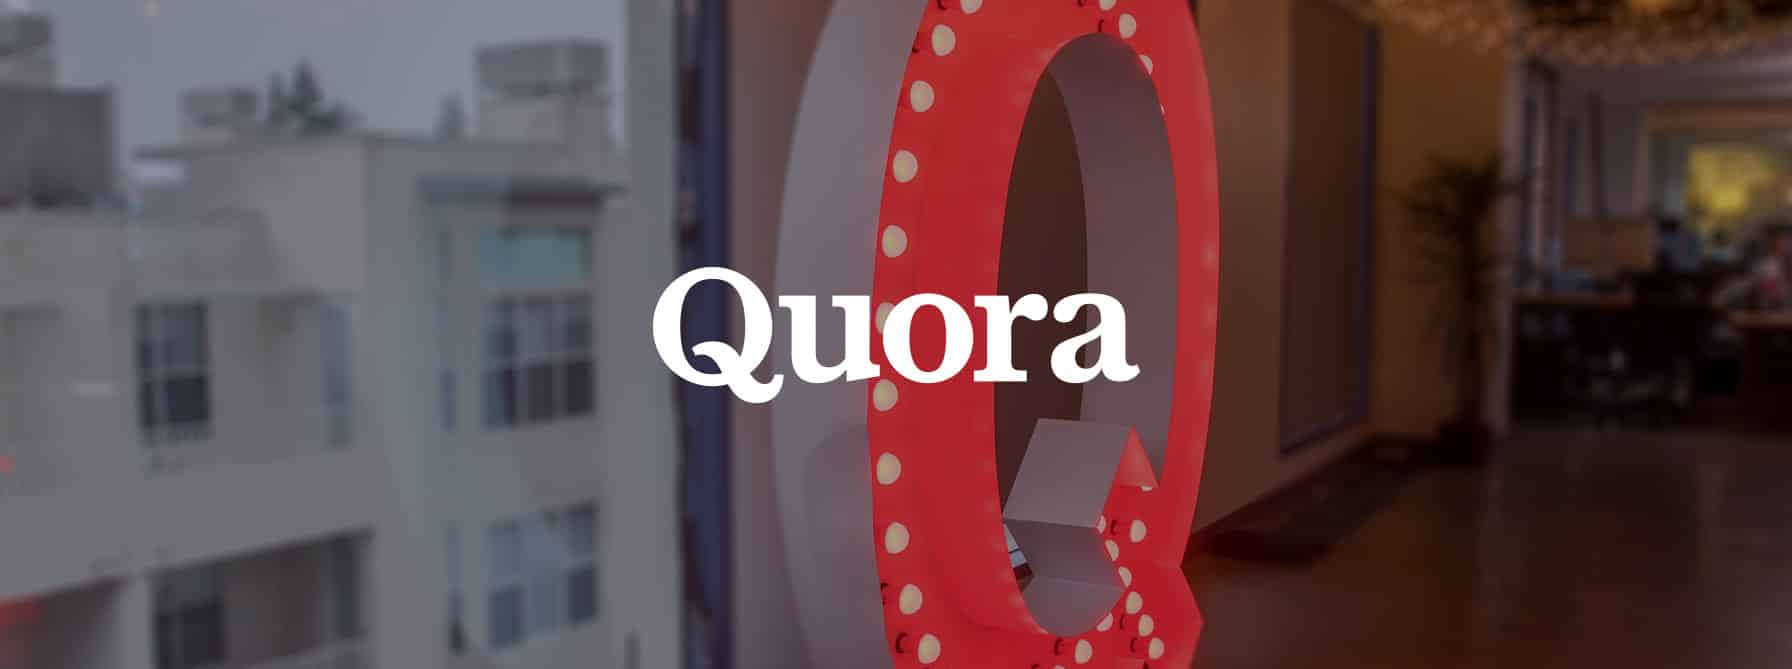 اختراق موقع Quora يعرض بيانات 100 مليون مستخدم للخطر